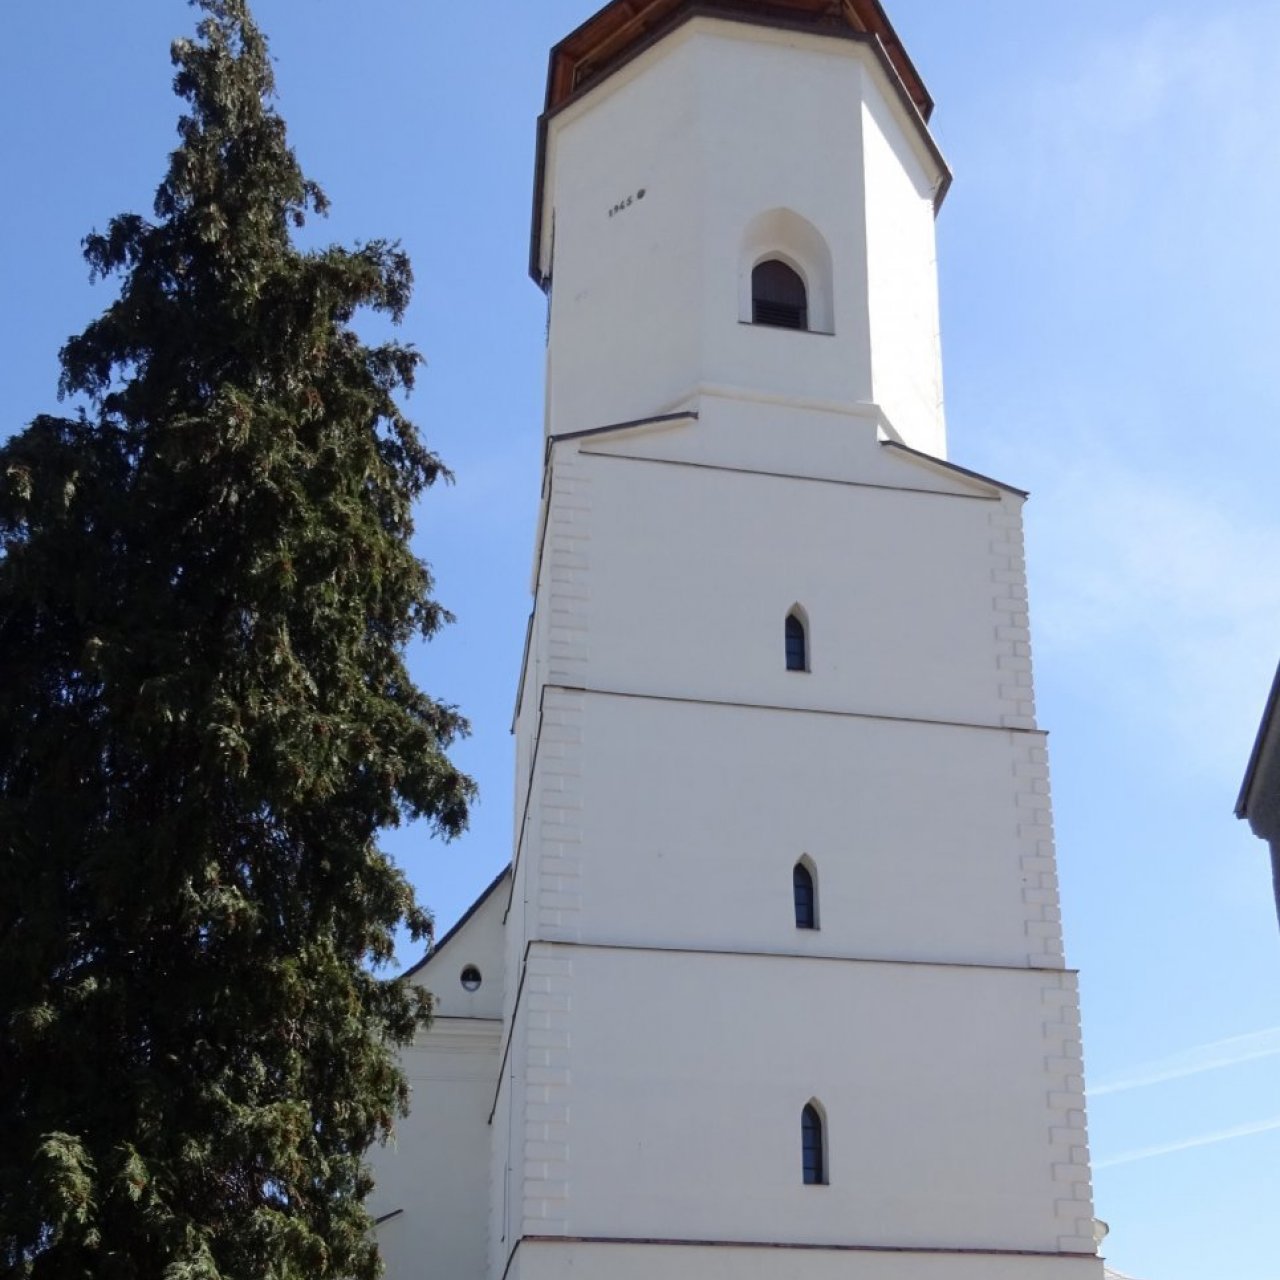 Bílovec - kostel sv. Mikuláše